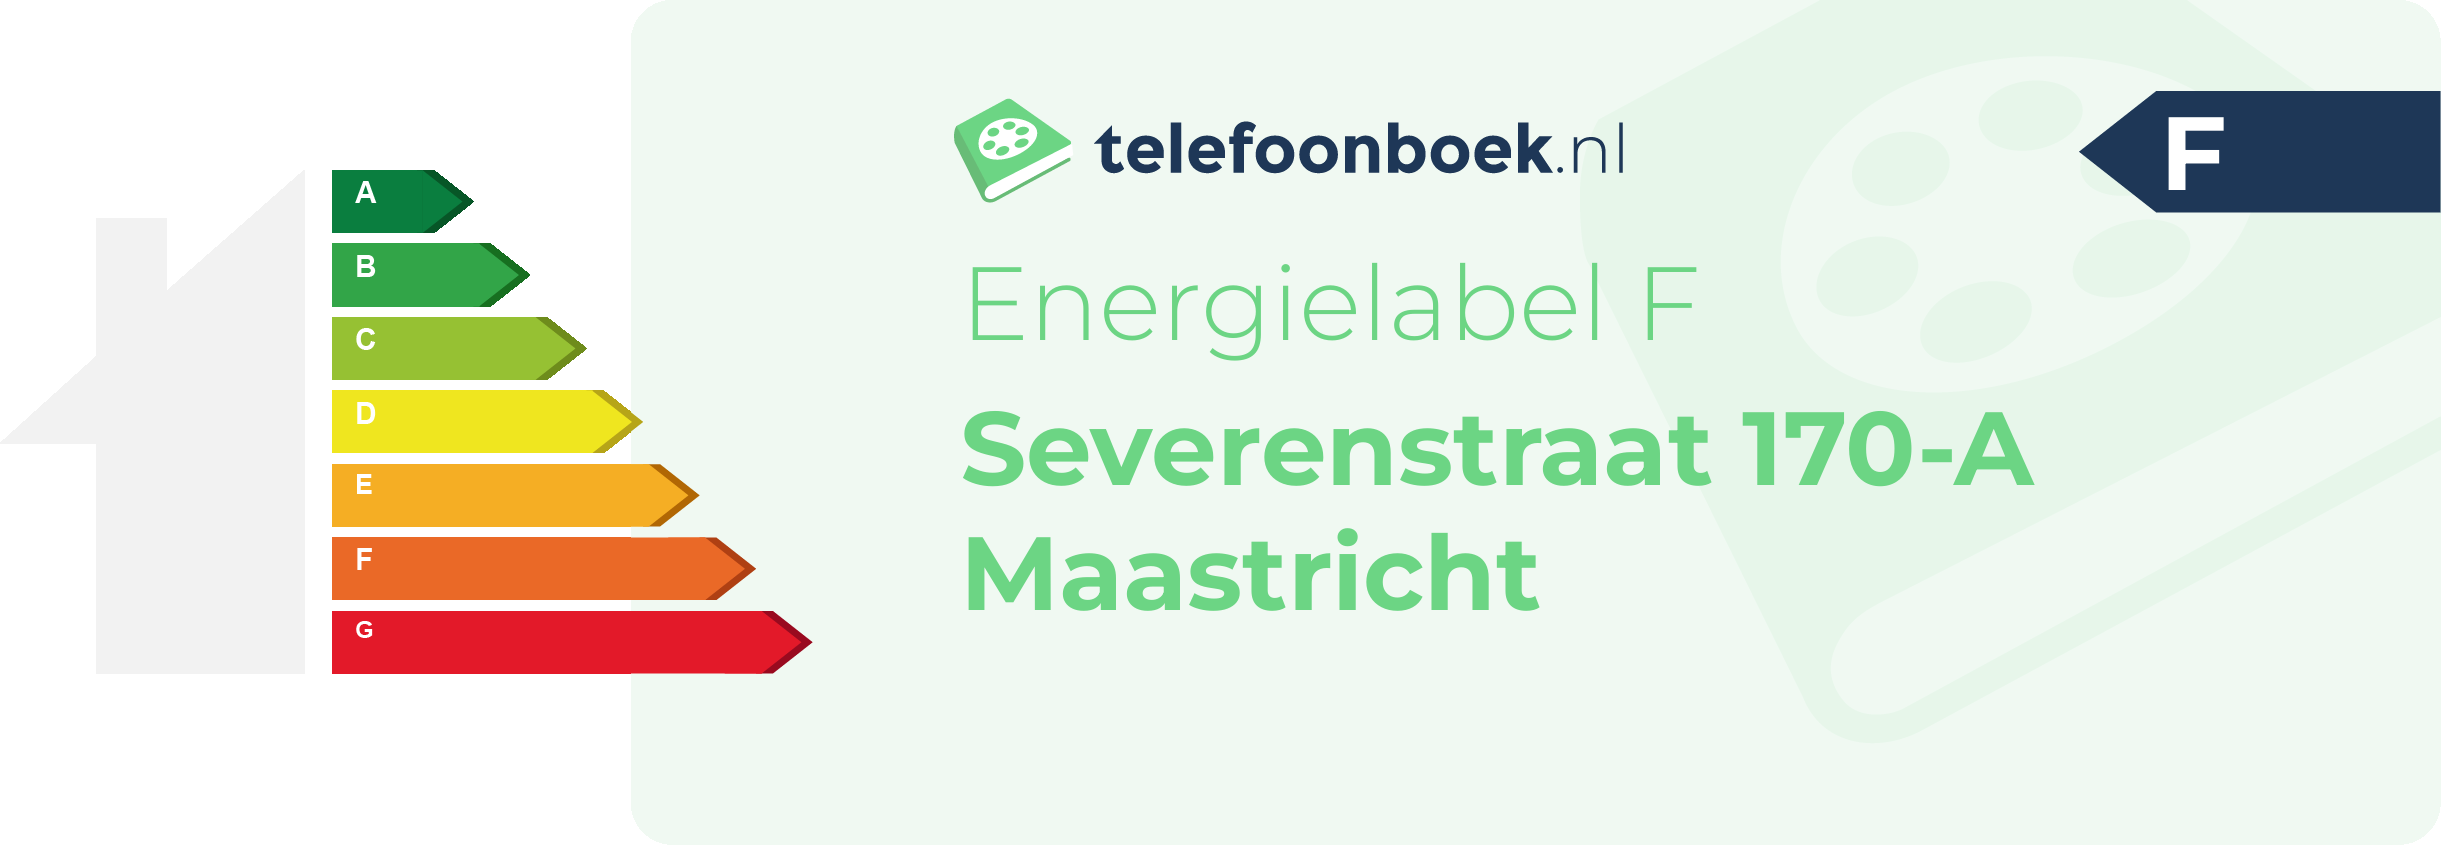 Energielabel Severenstraat 170-A Maastricht